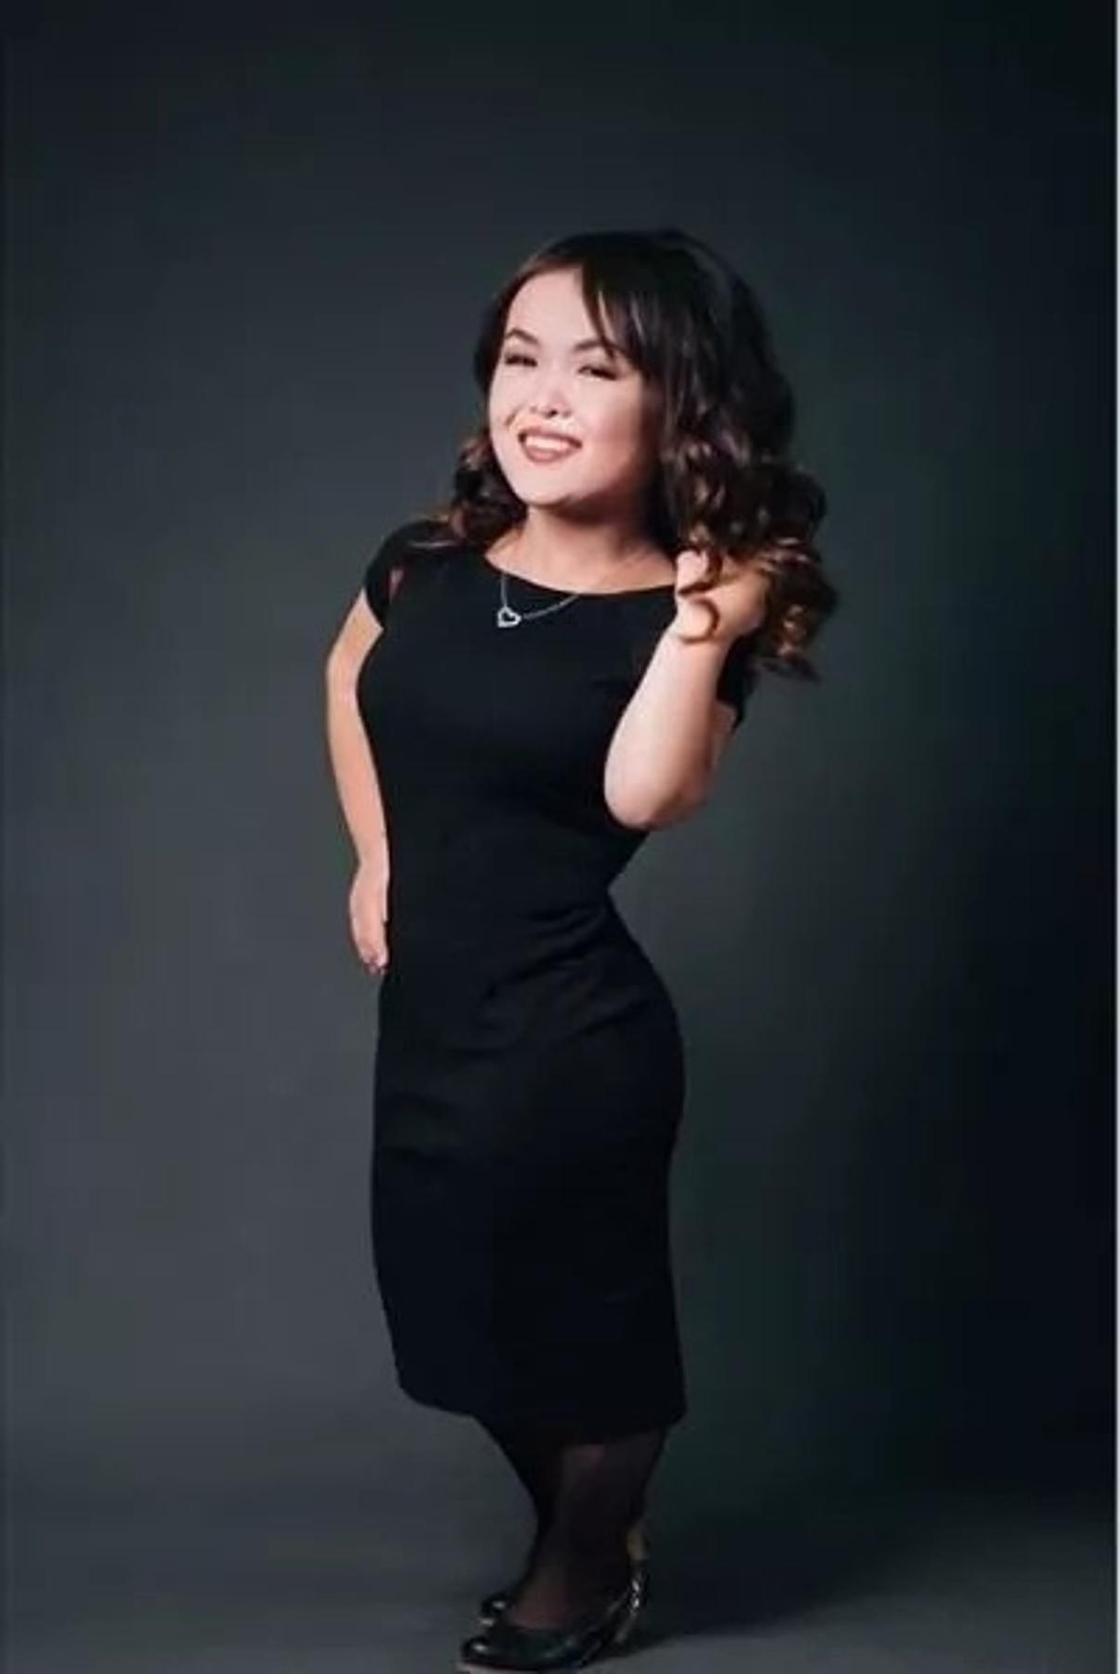 Қостанай облысы: Қабыл Тұрсынай, 18 жаста - Miss Virtual Kostanay